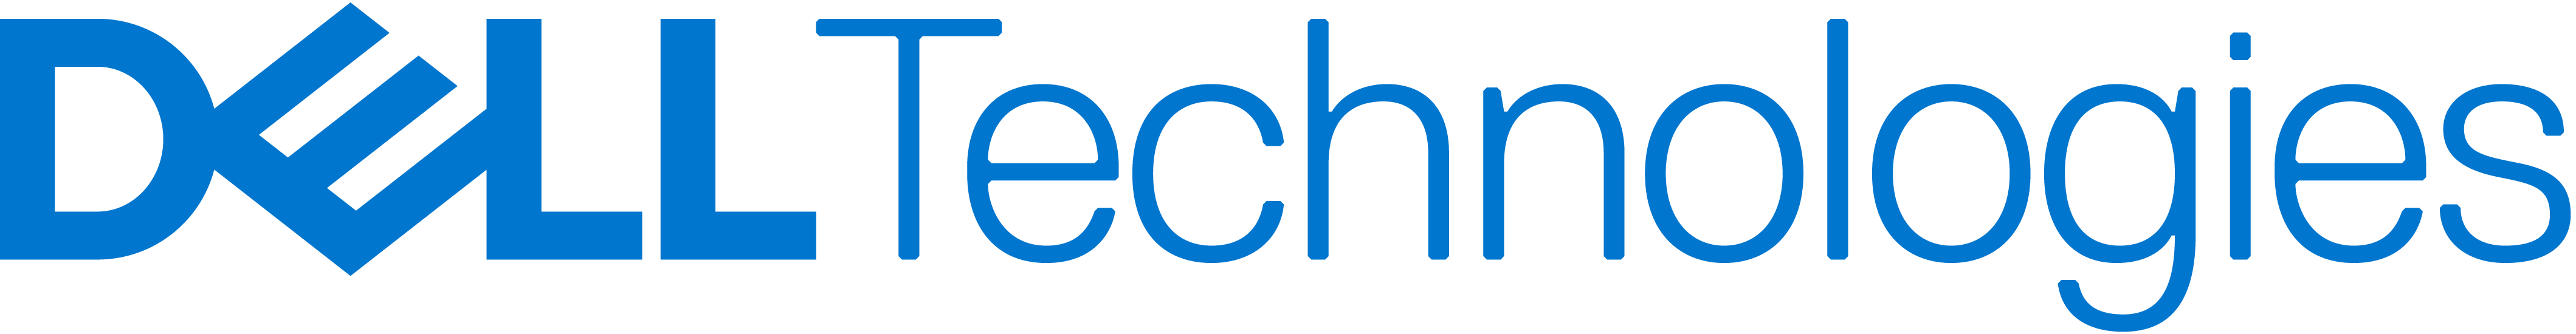 dell-logo